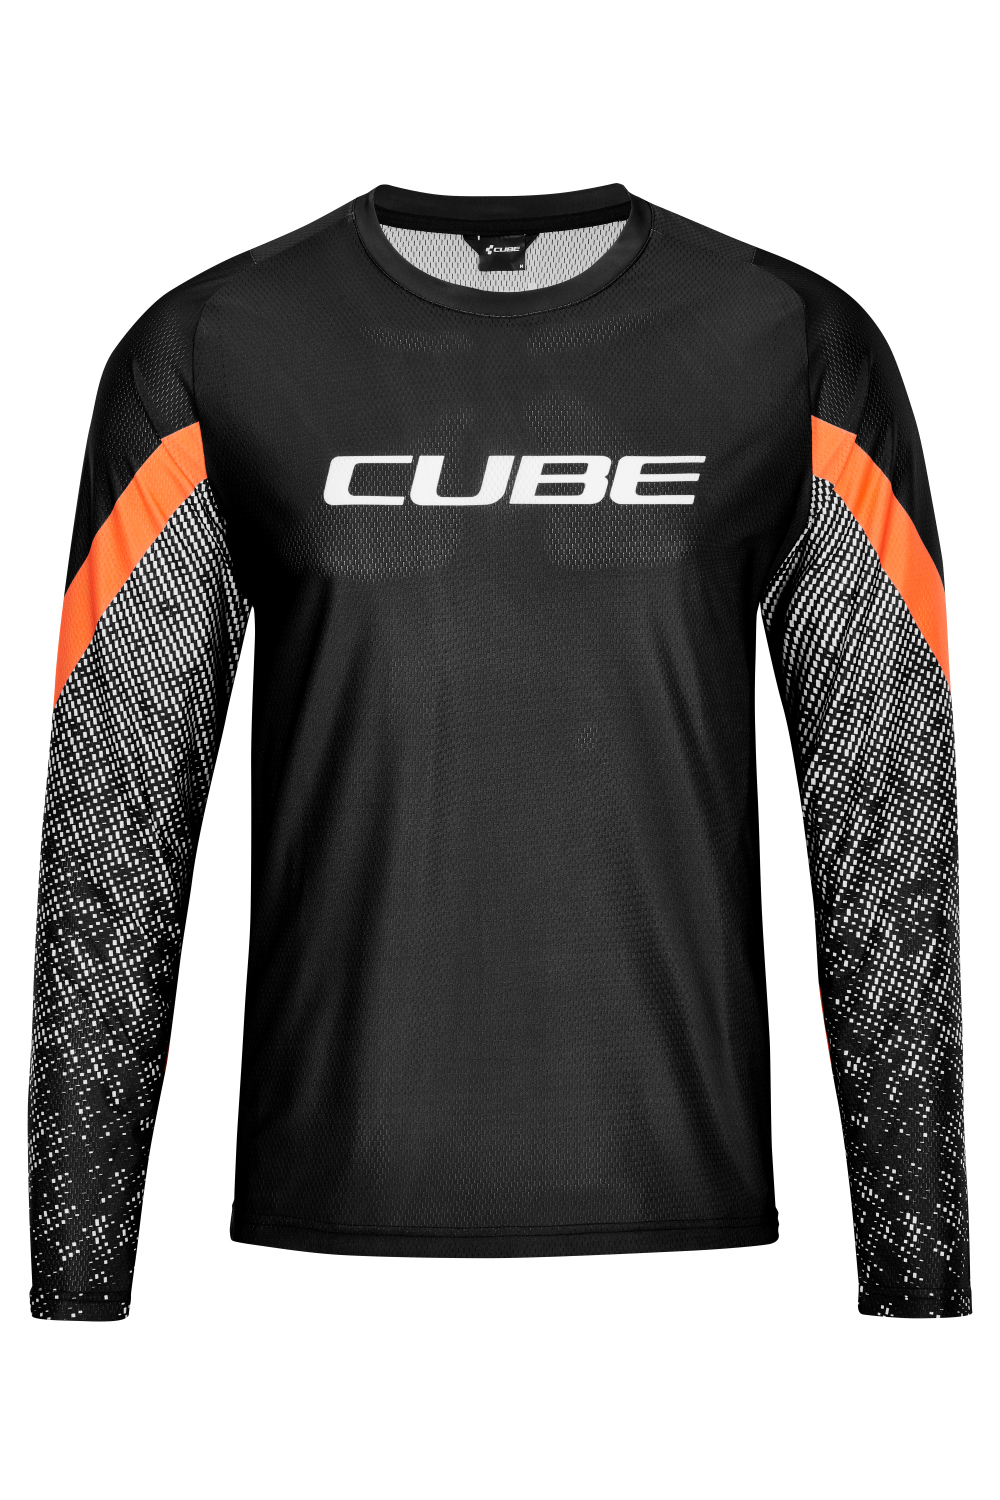 Cube Edge Shirt Lange Mouw Zwart Oranje 2021